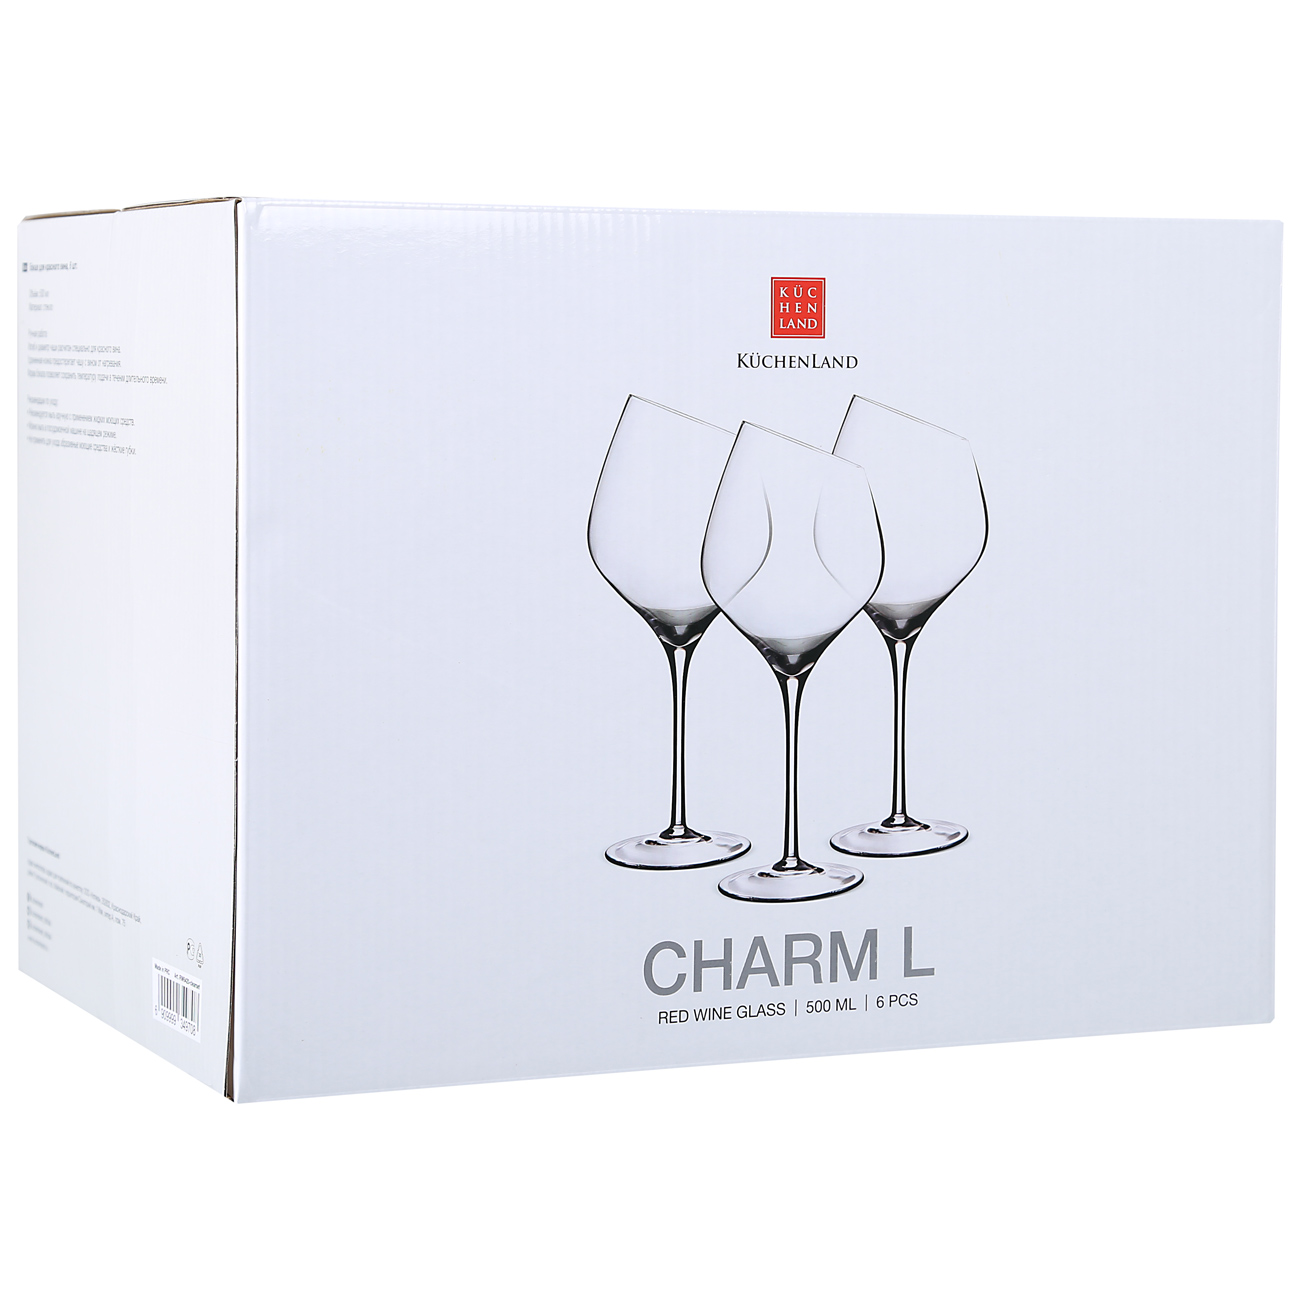 Red wine glass, 560 ml, 6 pcs, Charm L изображение № 3